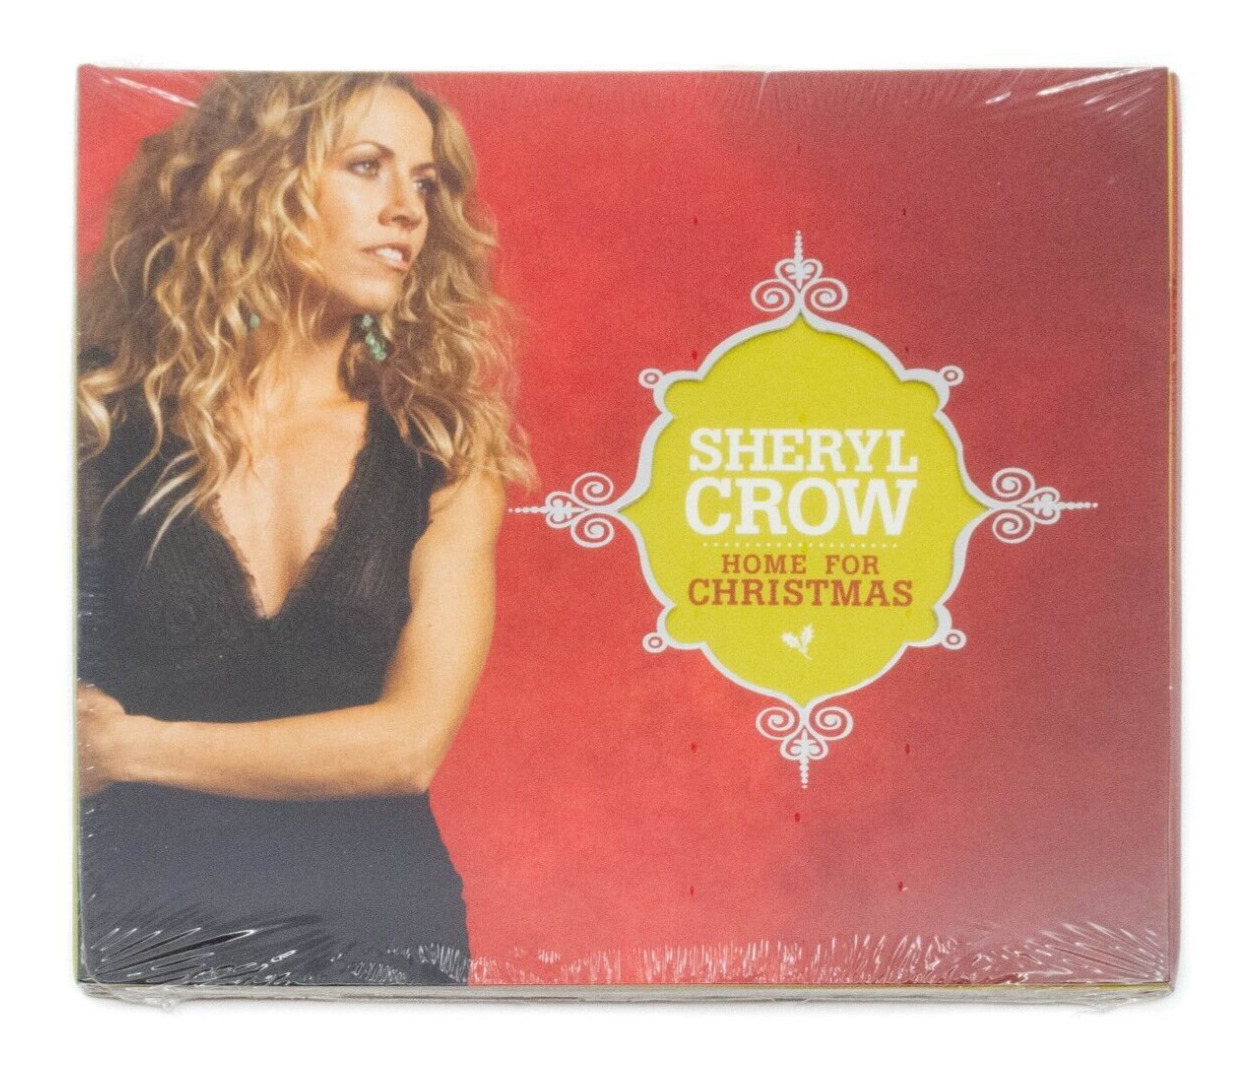 NEW & SEALED Hallmark Sheryl Crow “Home For Christmas” 2008 Holiday Musical CD